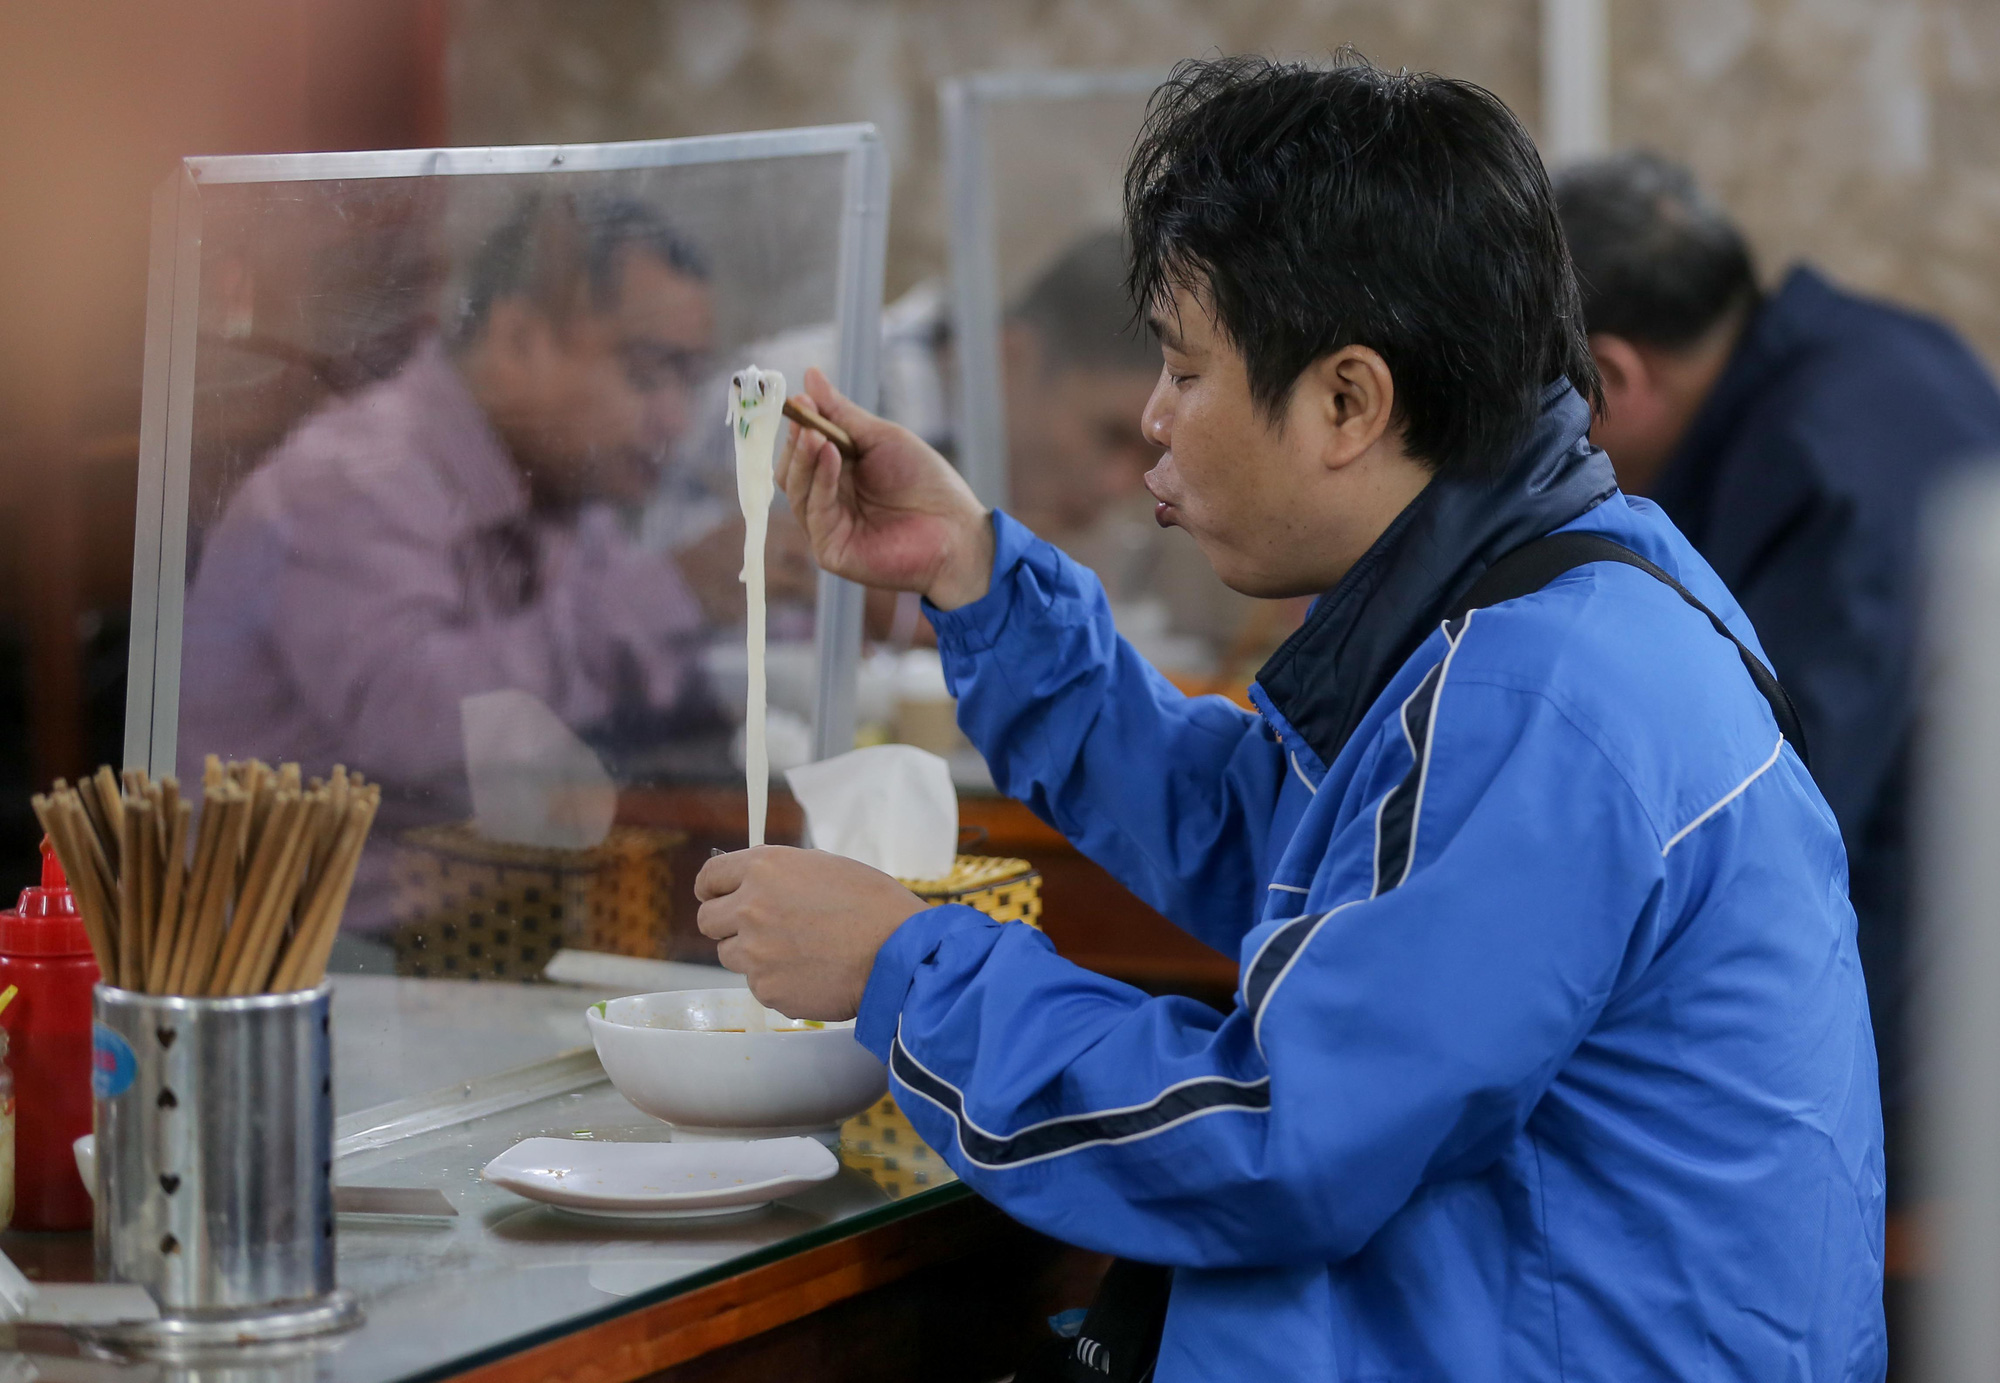 CLIP: Nườm nượp người dân đến ăn sáng tại quán ở Hà Nội - Ảnh 12.